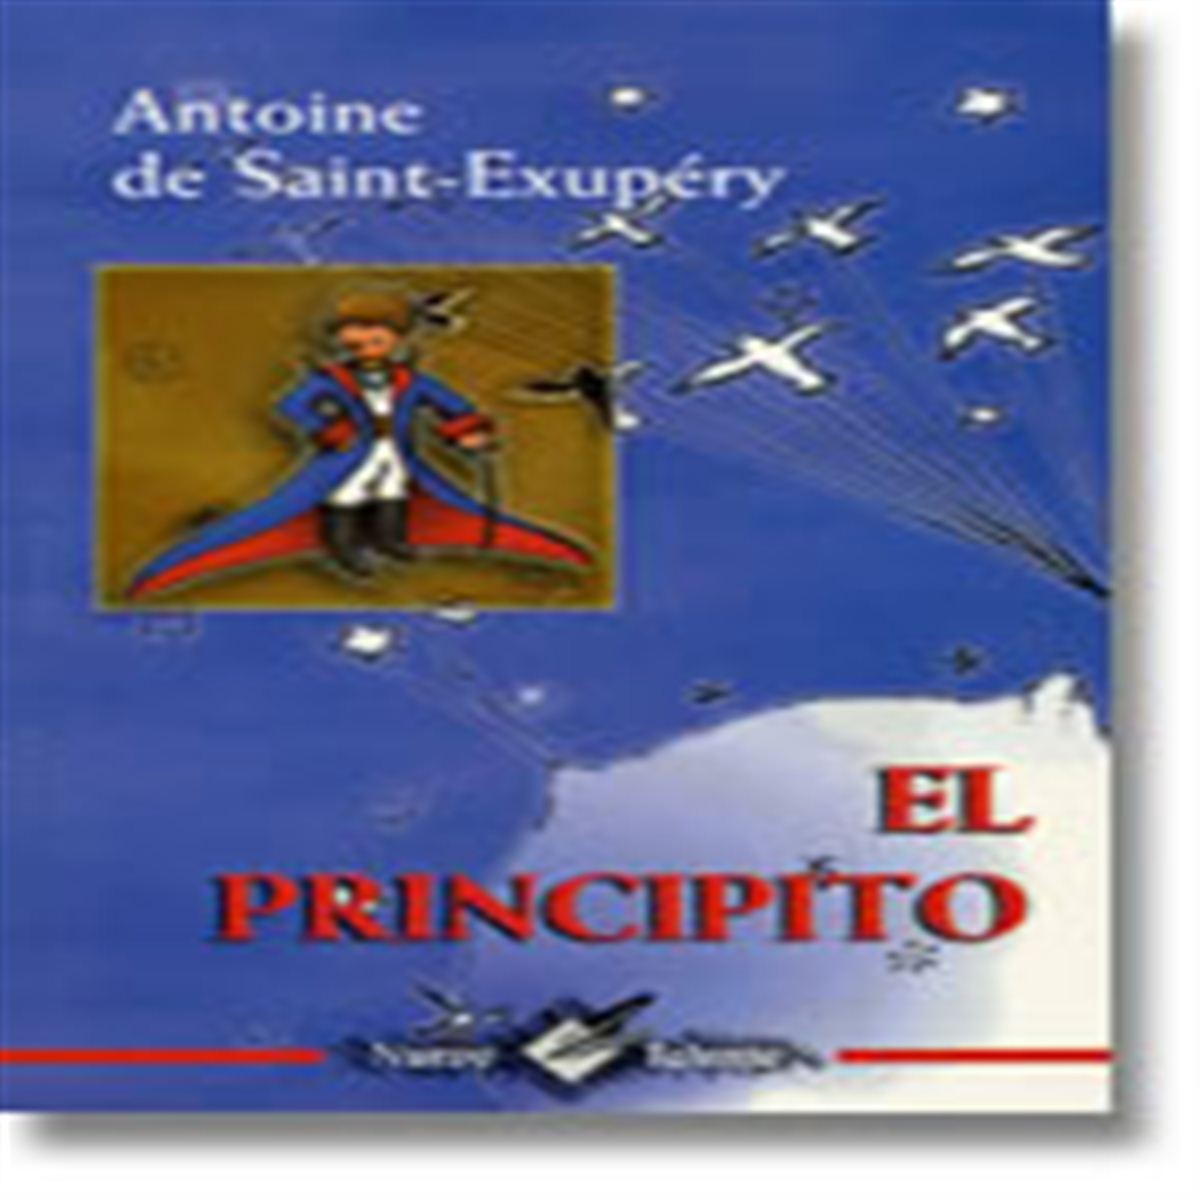 PRINCIPITO, EL (CLASICOS PARA NIÑOS). DE SAINT-EXUPERY.. 9786079106058